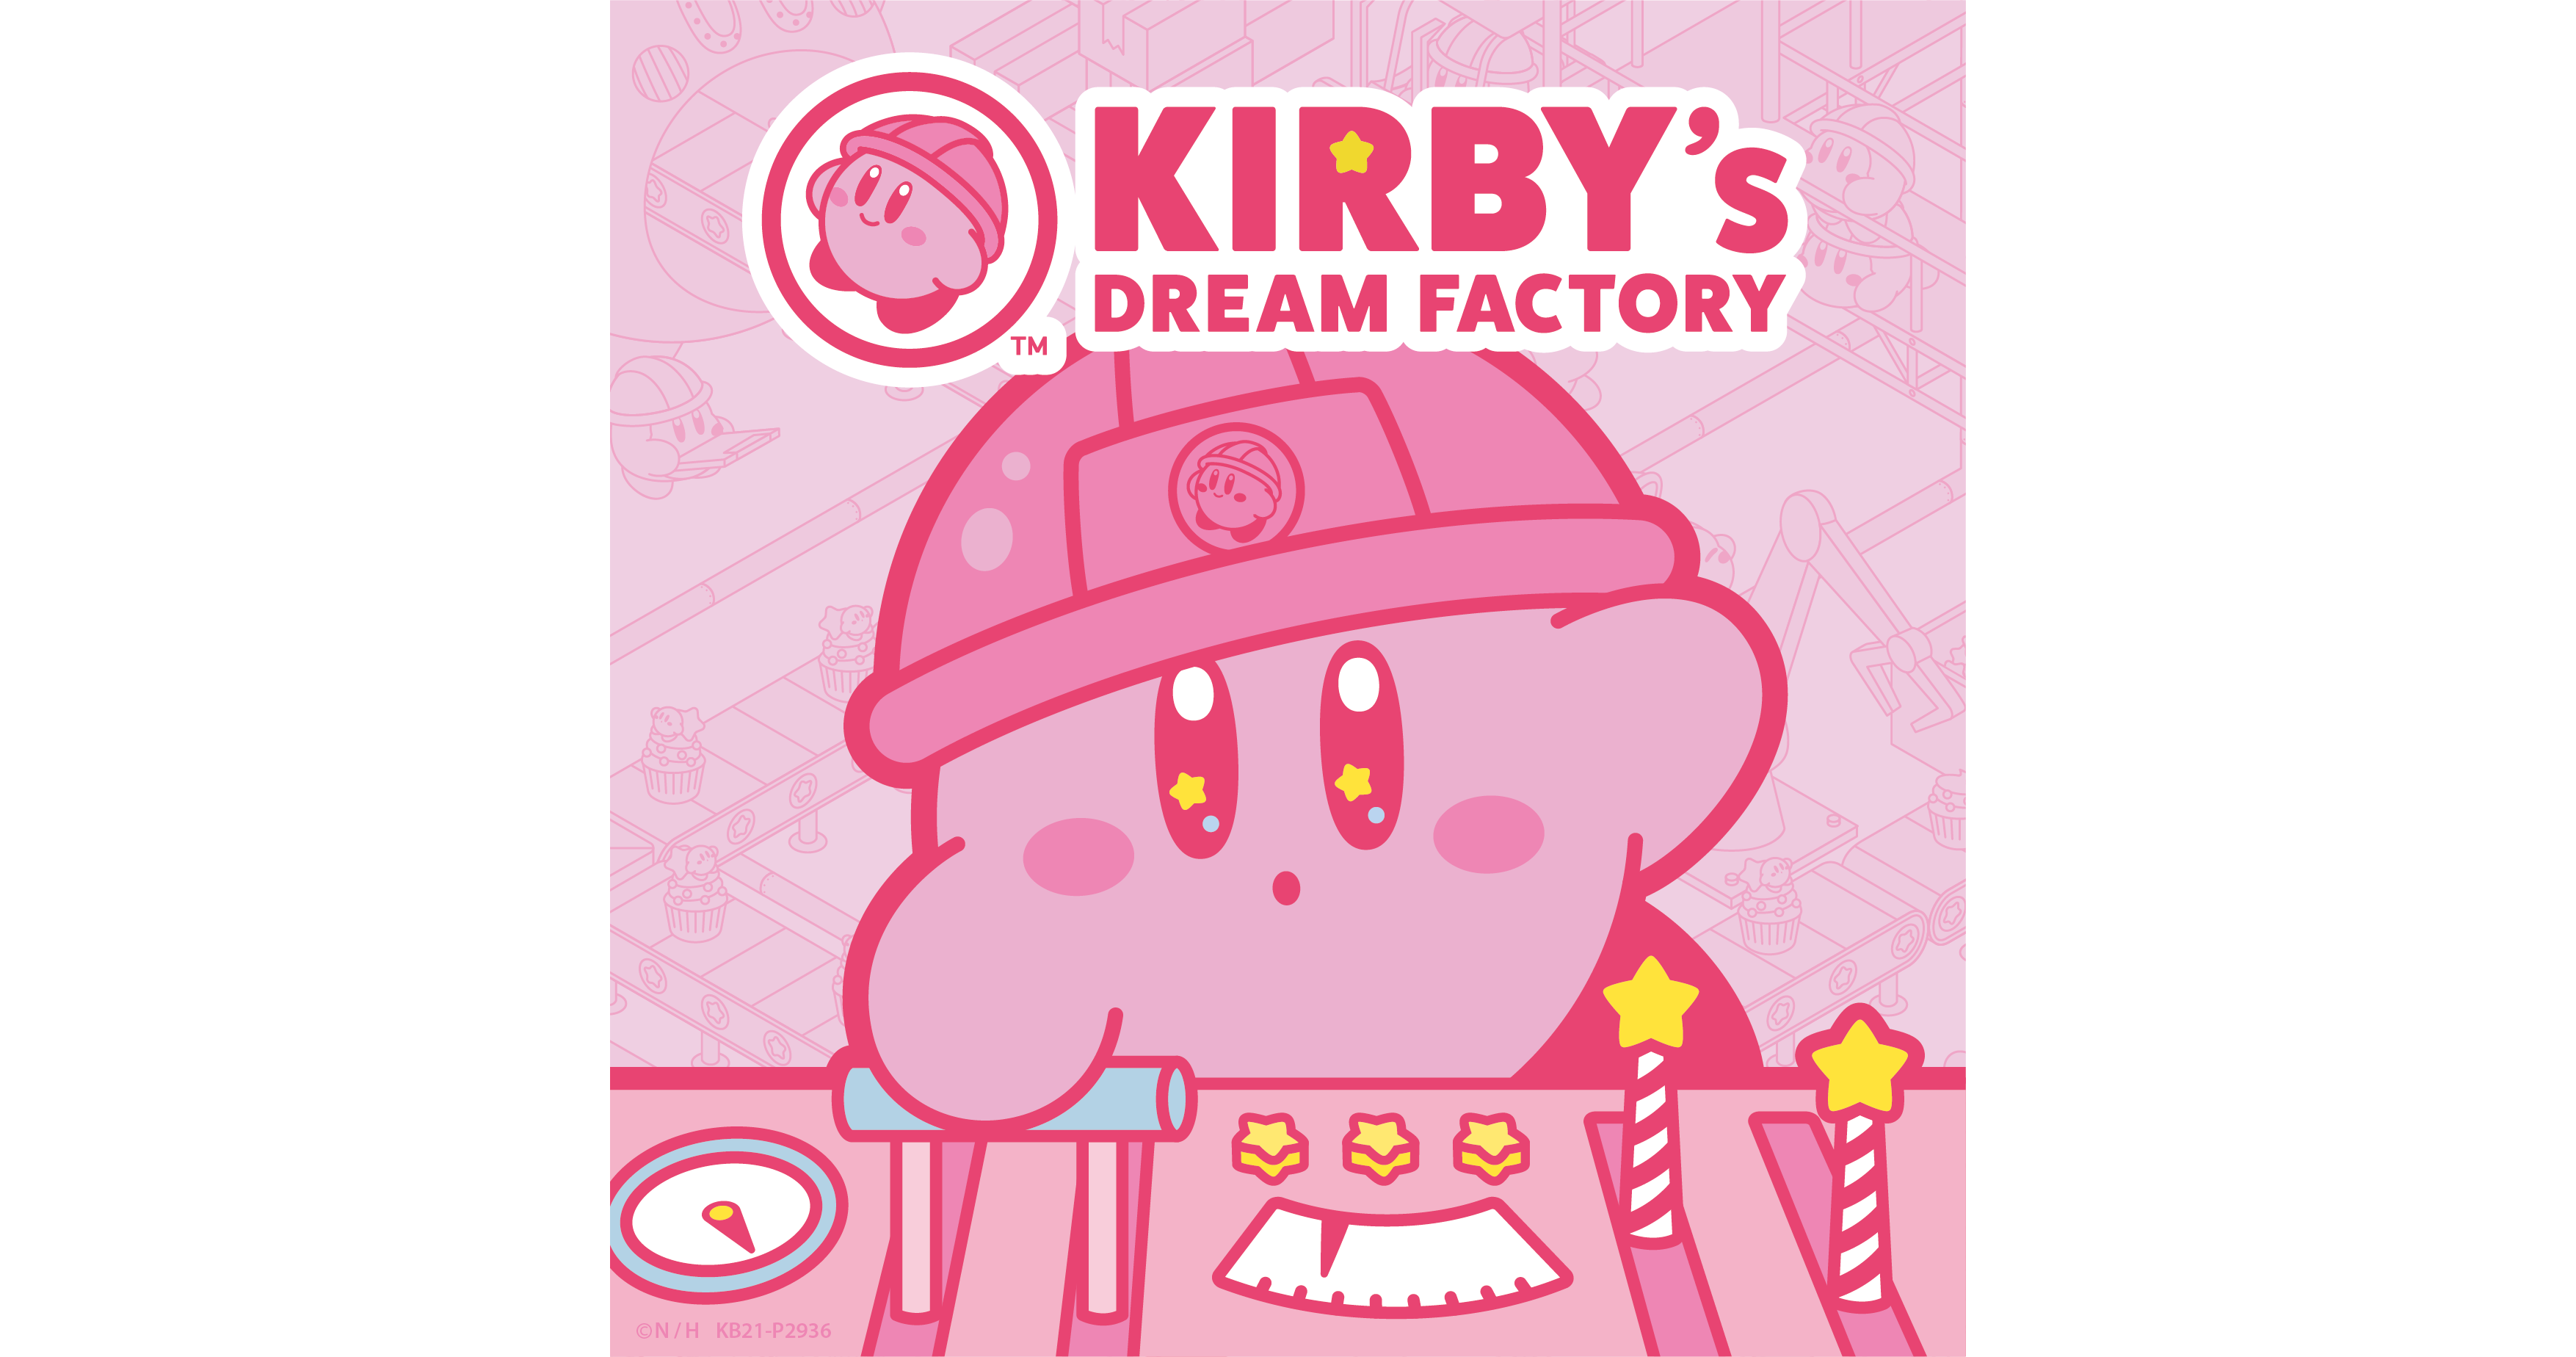 kirbys-dream-factory%ef%bc%88%e3%82%ab%e3%83%bc%e3%83%92%e3%82%99%e3%82%a3%e3%81%ae%e3%83%88%e3%82%99%e3%83%aa%e3%83%bc%e3%83%a0%e3%83%95%e3%82%a1%e3%82%af%e3%83%88%e3%83%aa%e3%83%bc%ef%bc%89